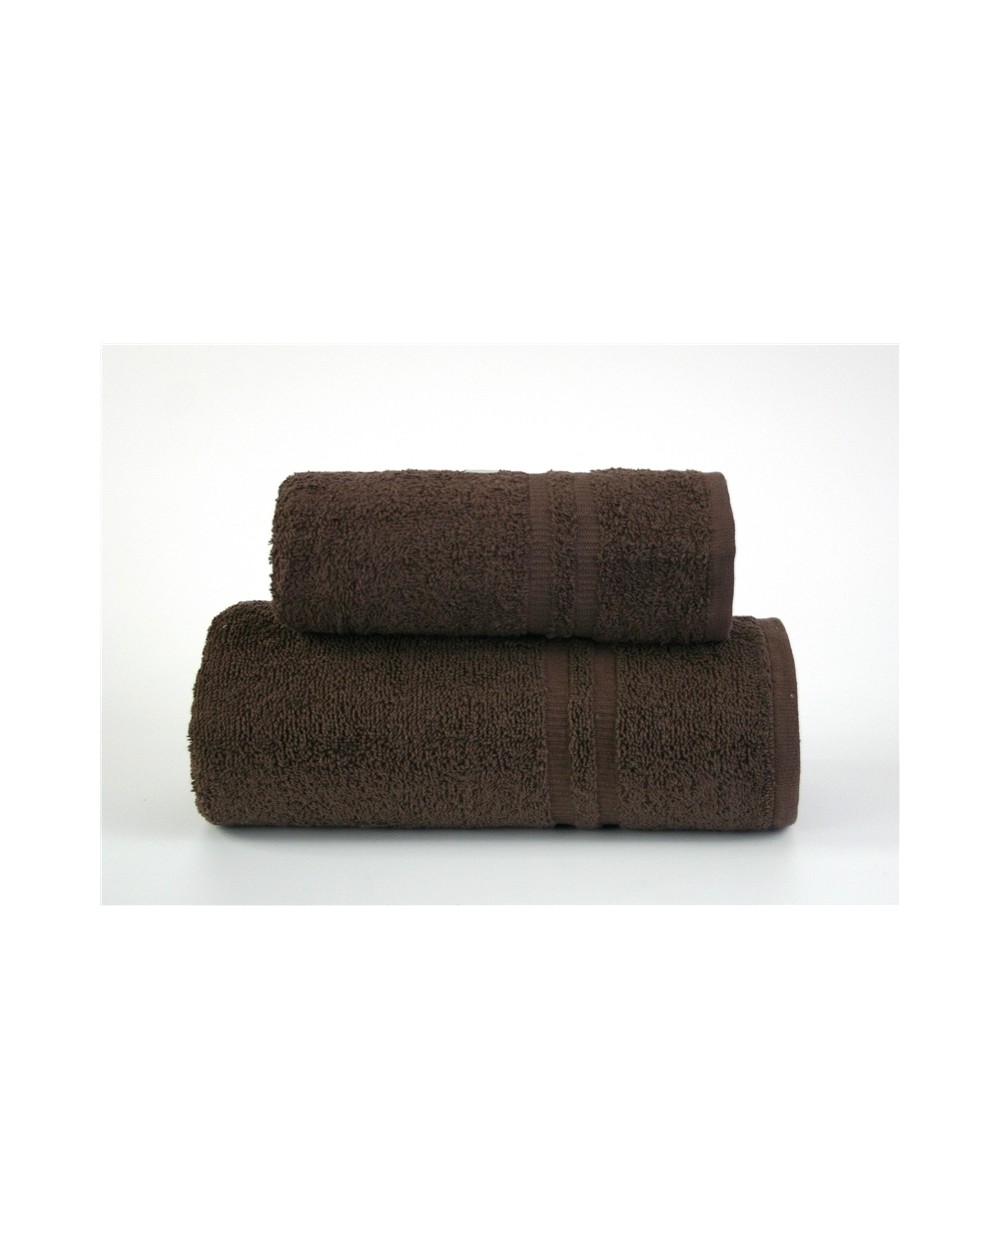 Ręcznik Junak New bawełna 70x140 brązowy